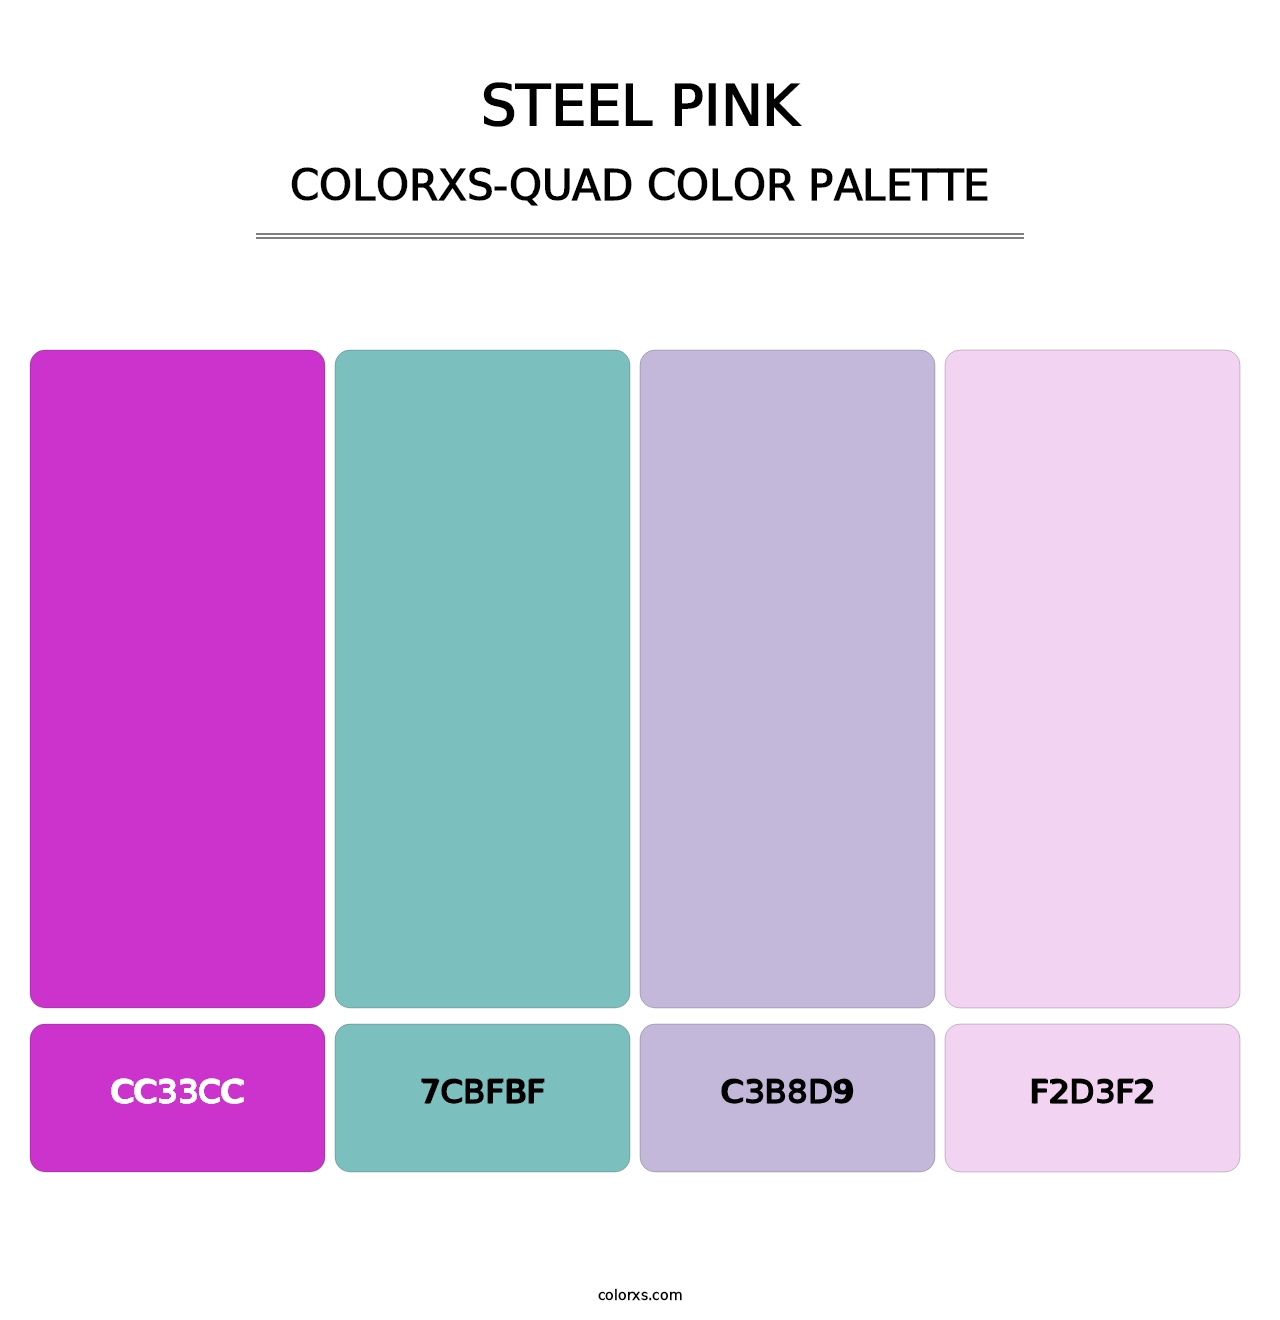 Steel Pink - Colorxs Quad Palette